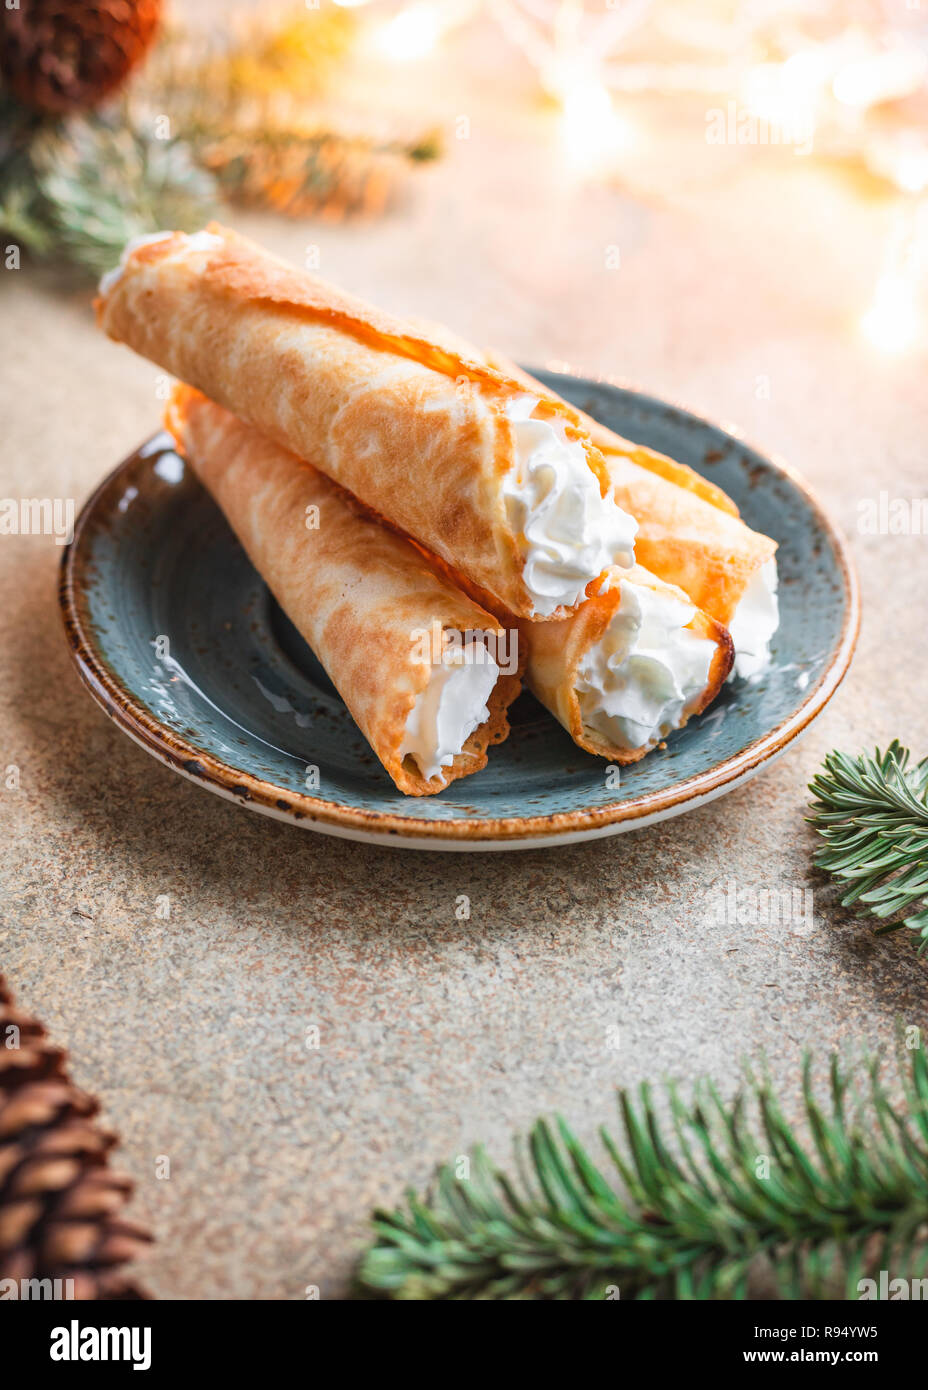 Biscotti Di Natale Norvegesi.Natale Tradizionale Norvegese Krumkake Biscotti Con Panna Montata Tra Decor D Inverno Foto Stock Alamy